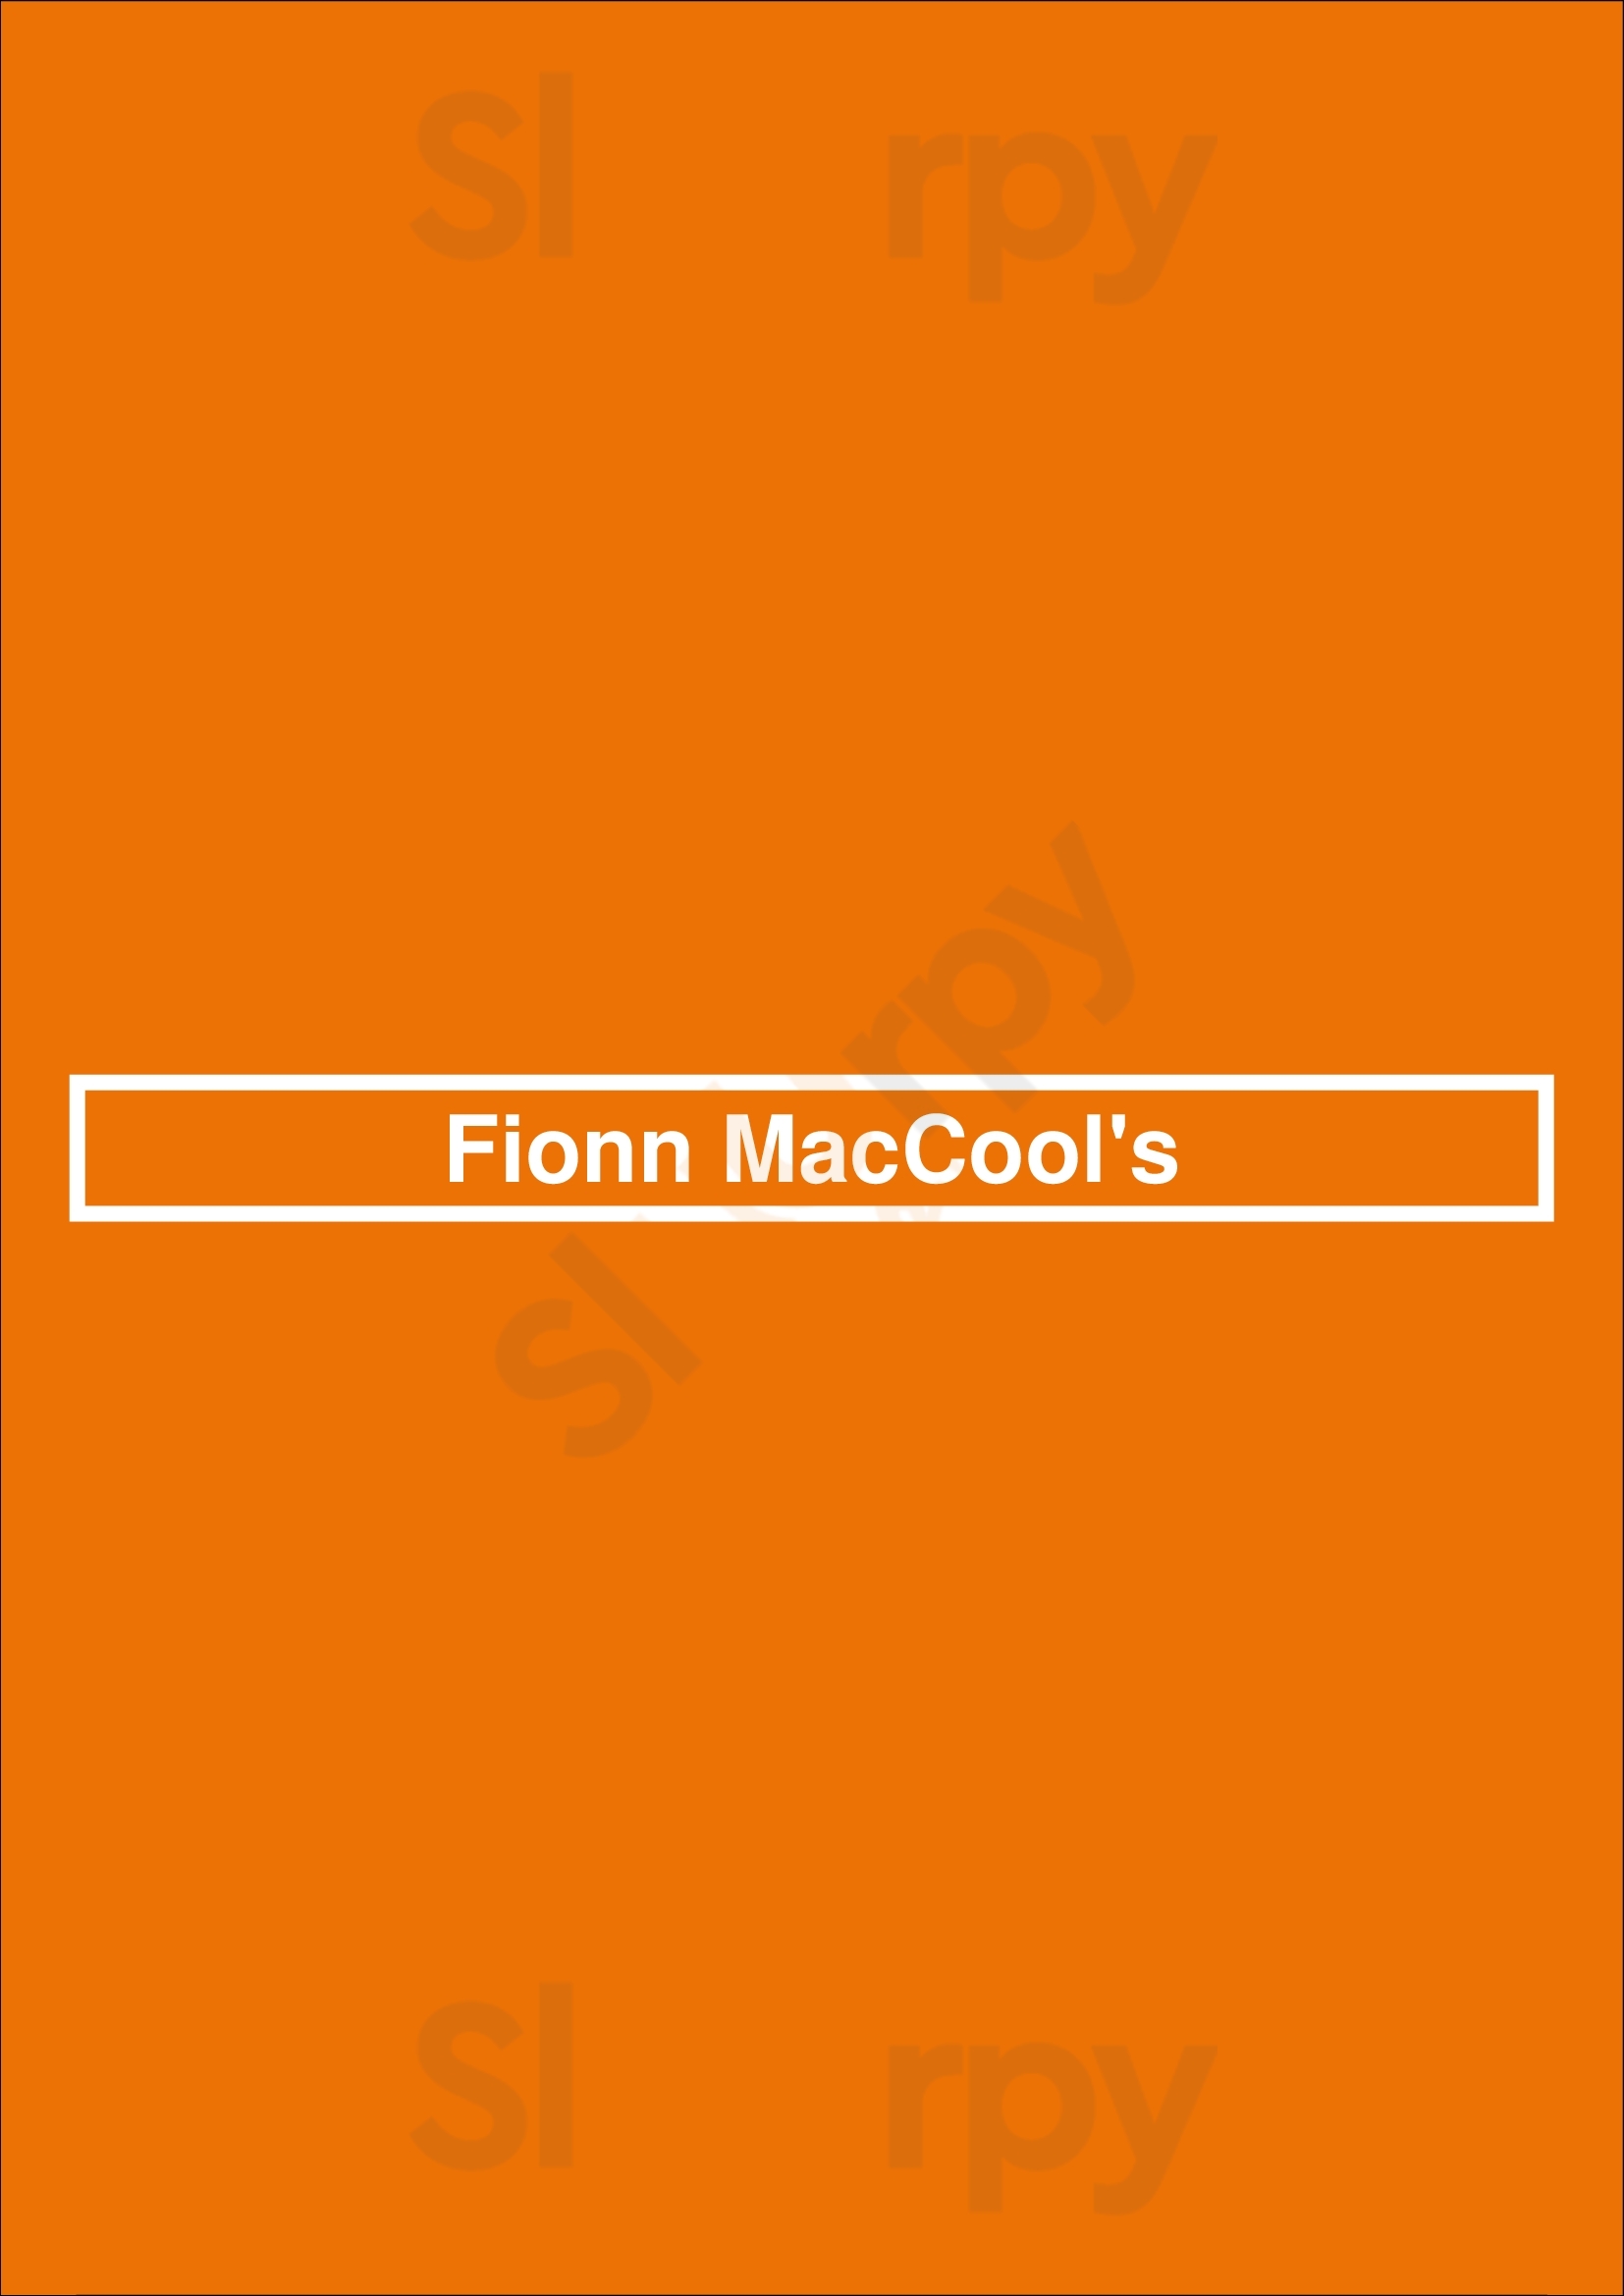 Fionn Maccool's Bowmanville Menu - 1